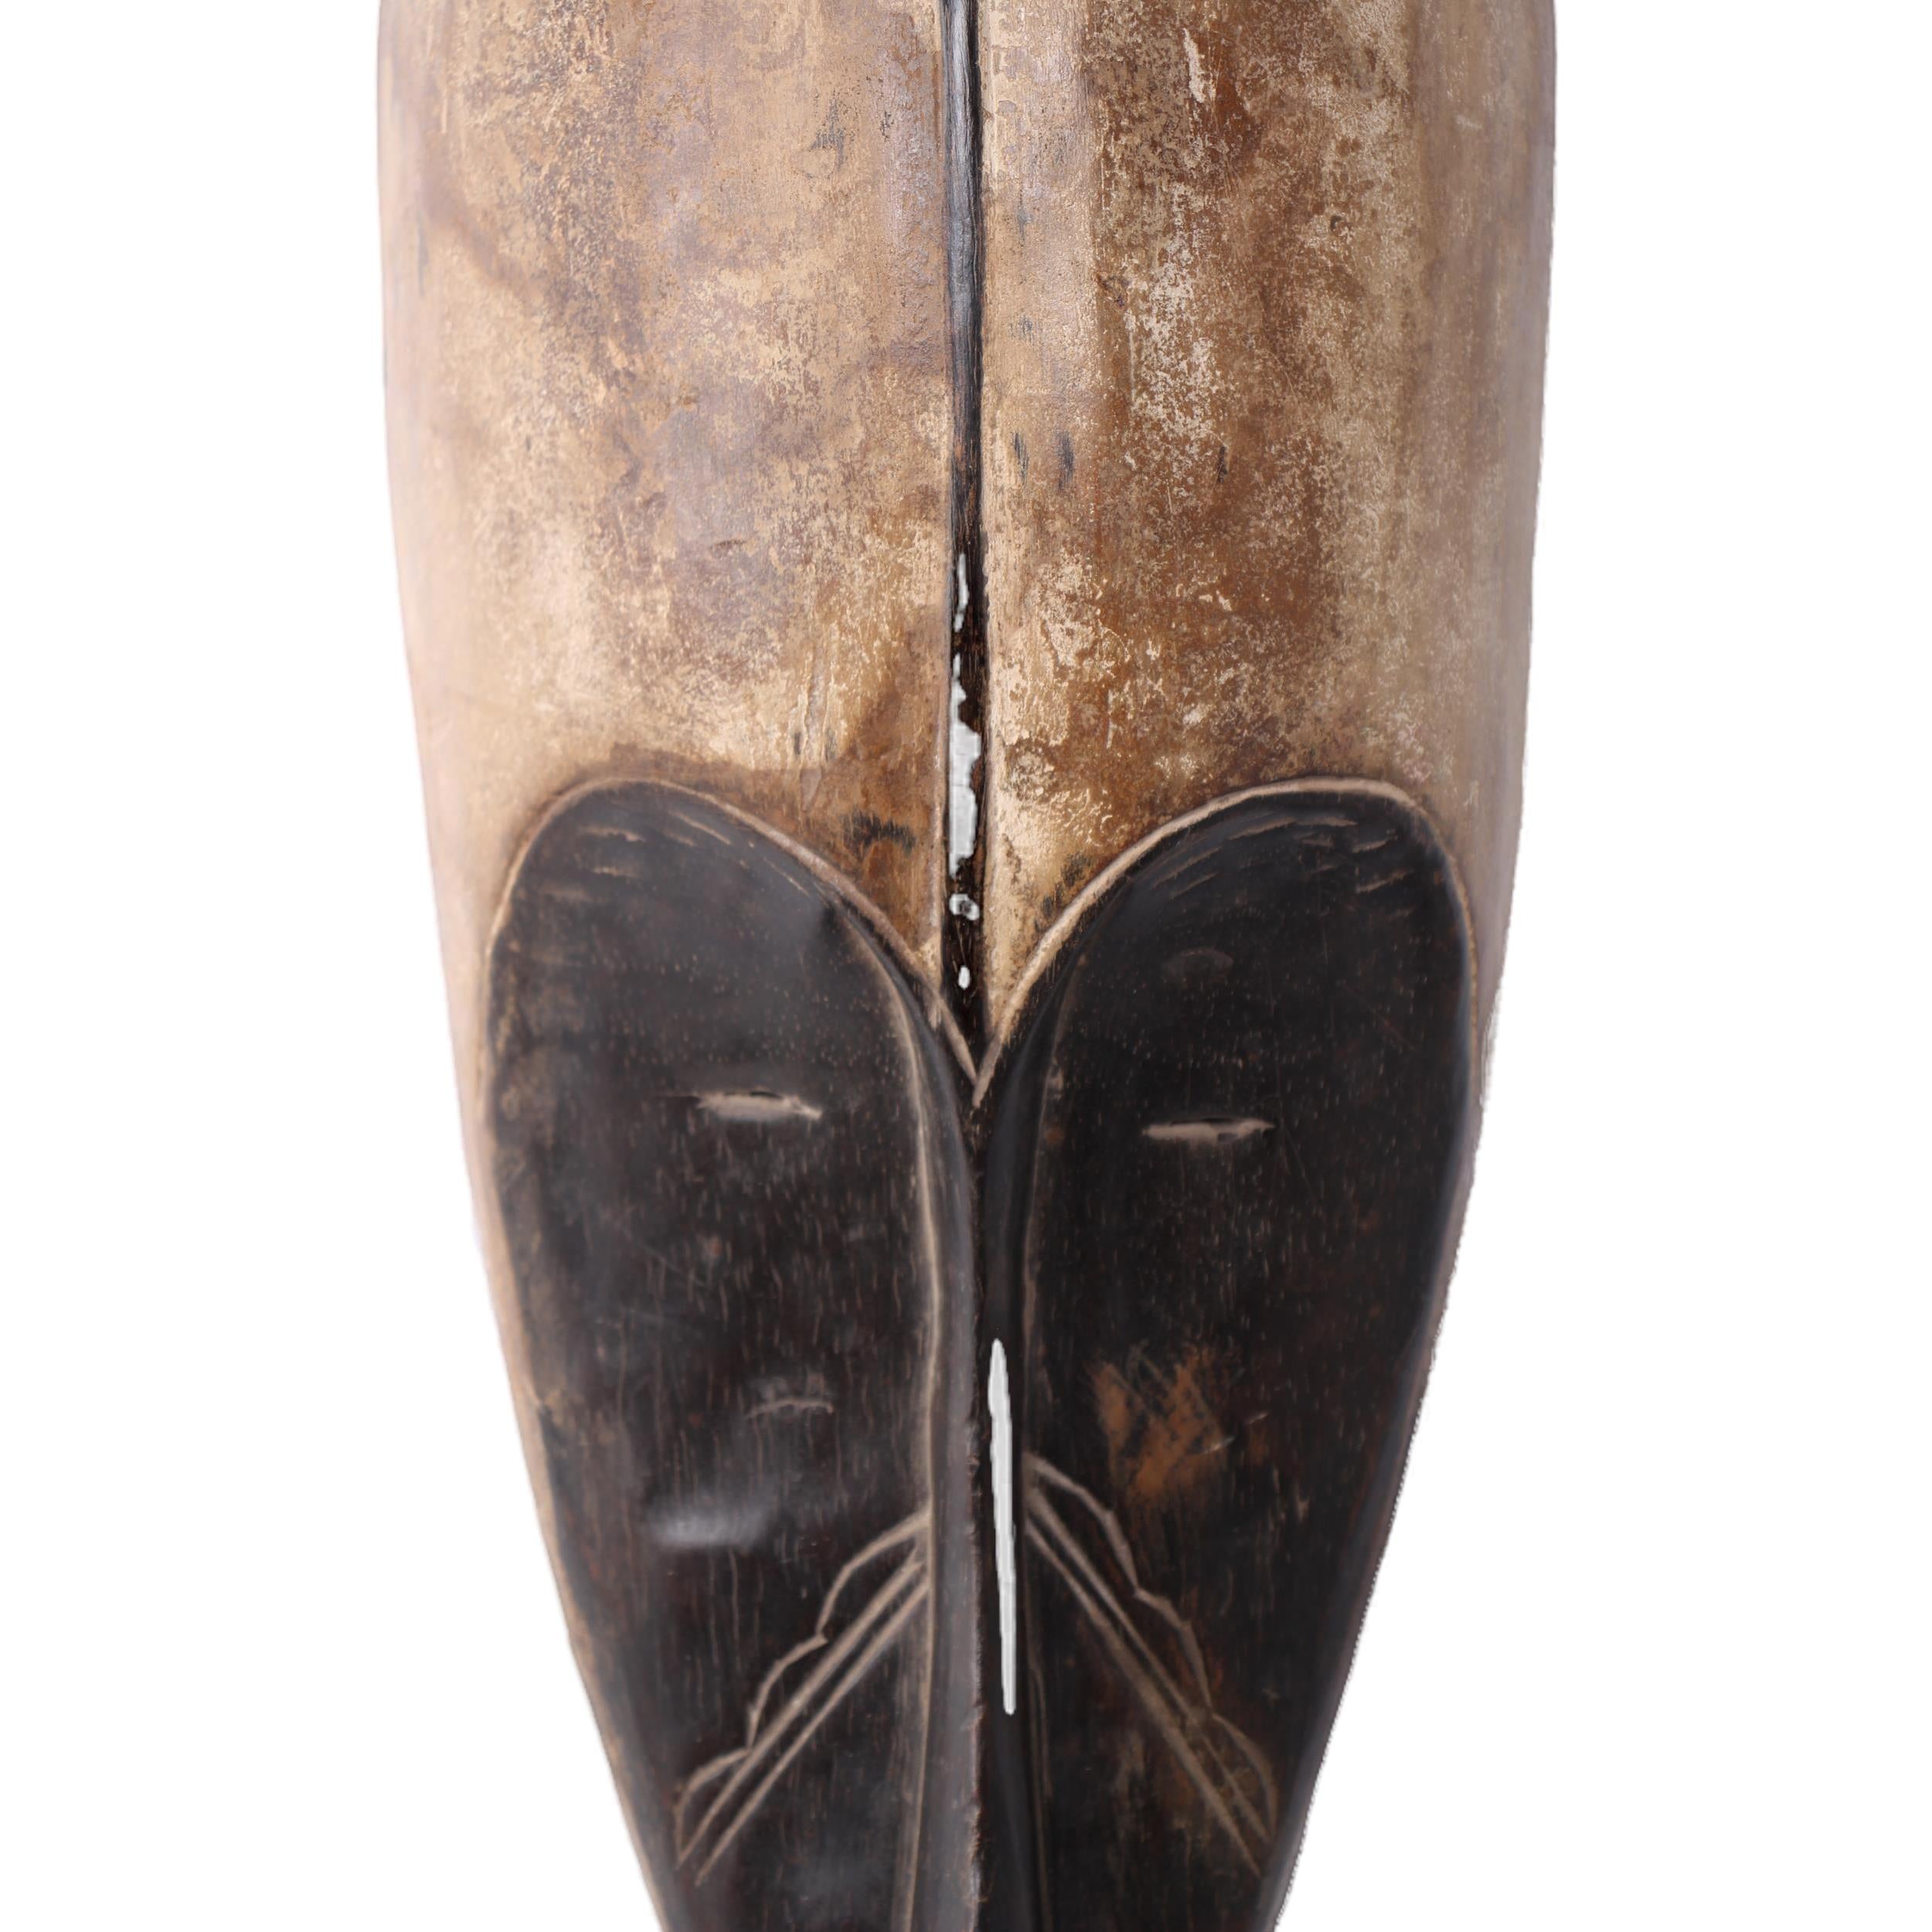 Fang Tribe Mask ~25.6" Tall - Mask